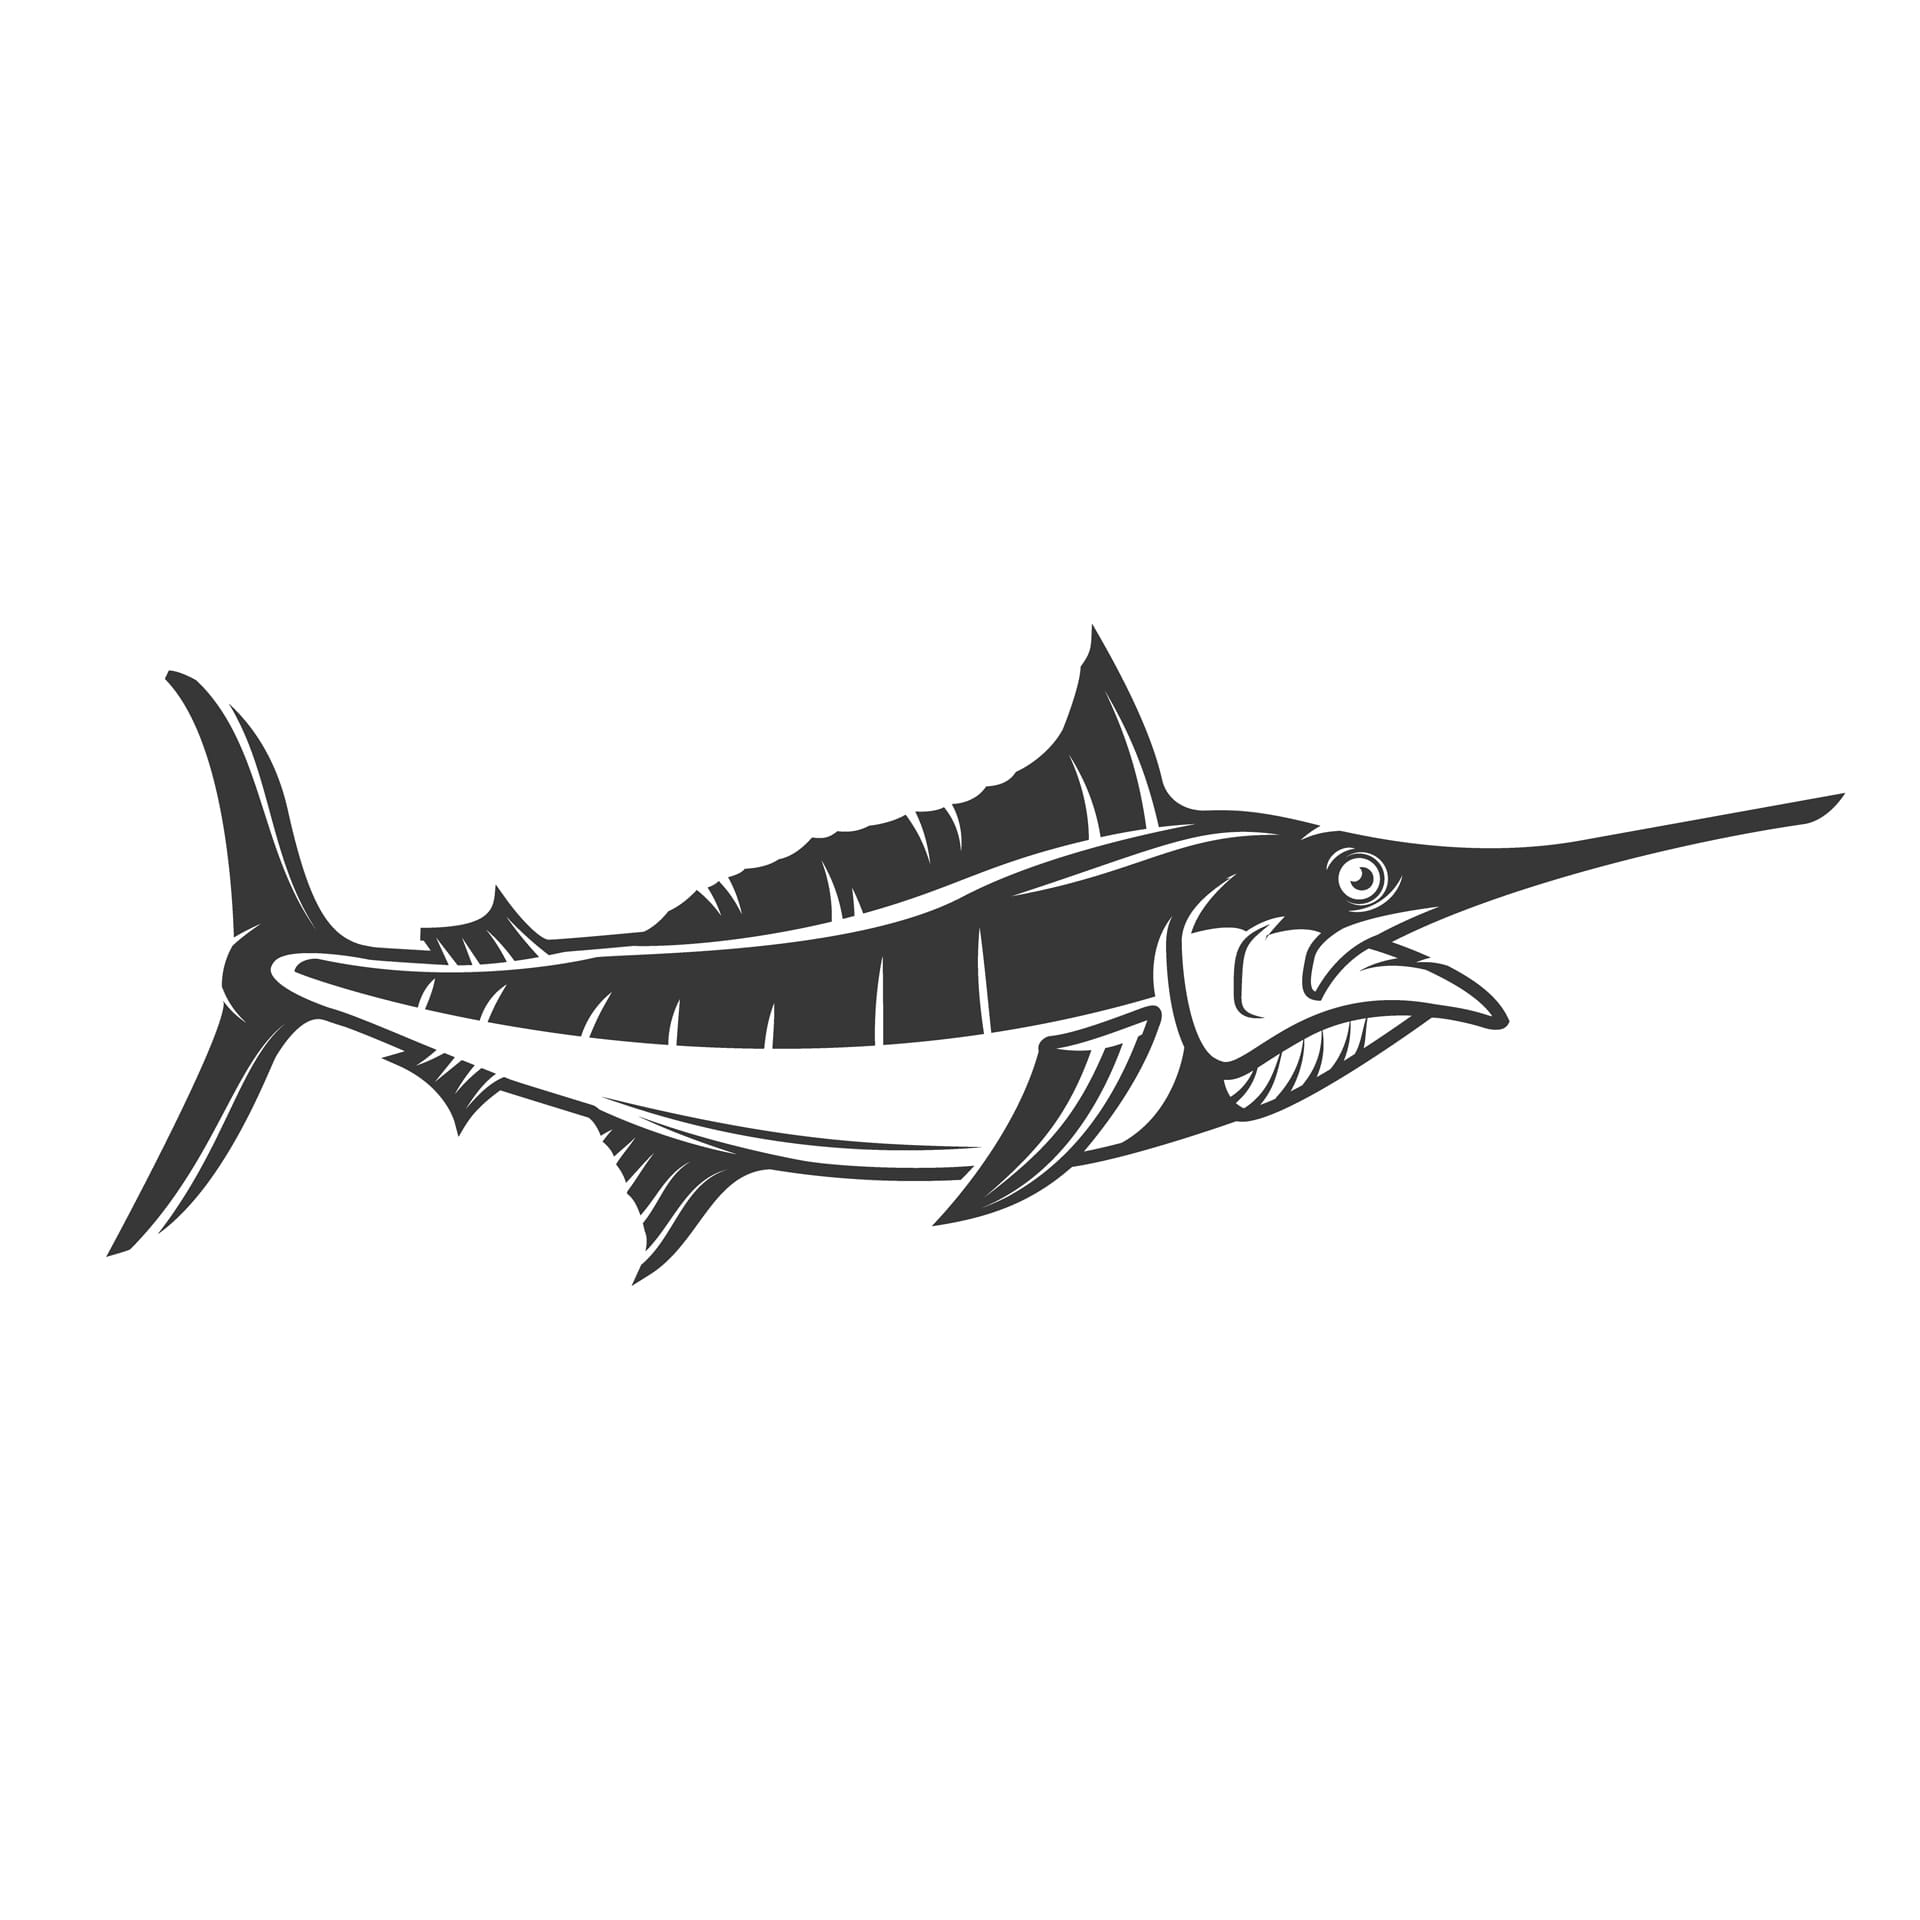 Swordfish illustration elements logo label emblem sign picture